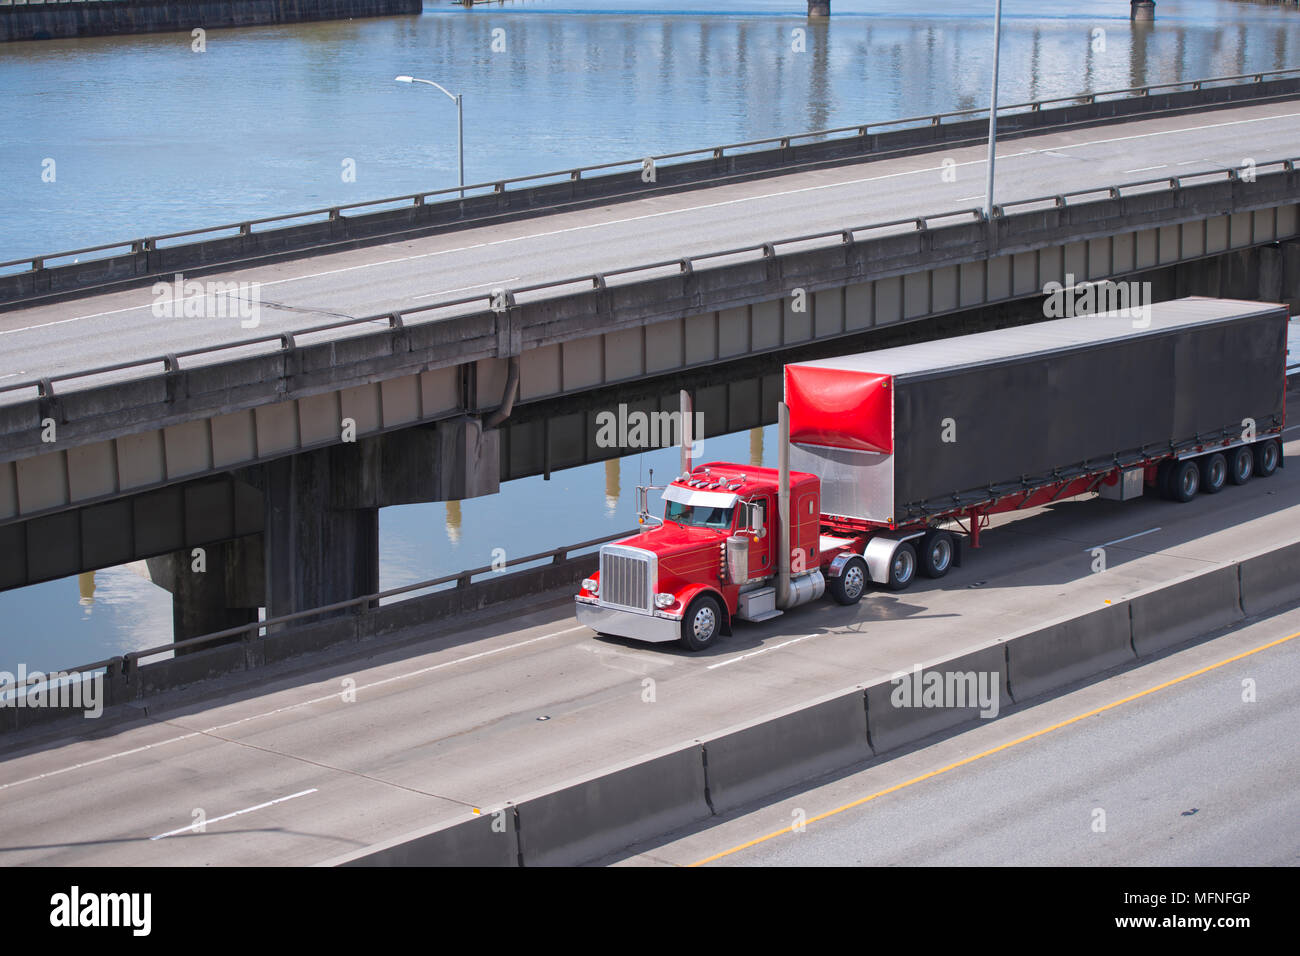 Big Rig red Classic American Semi Truck Transport von kommerziellen Ladung trocken van Auflieger gehen unter multilevel Überführung Straßen intersecti Stockfoto